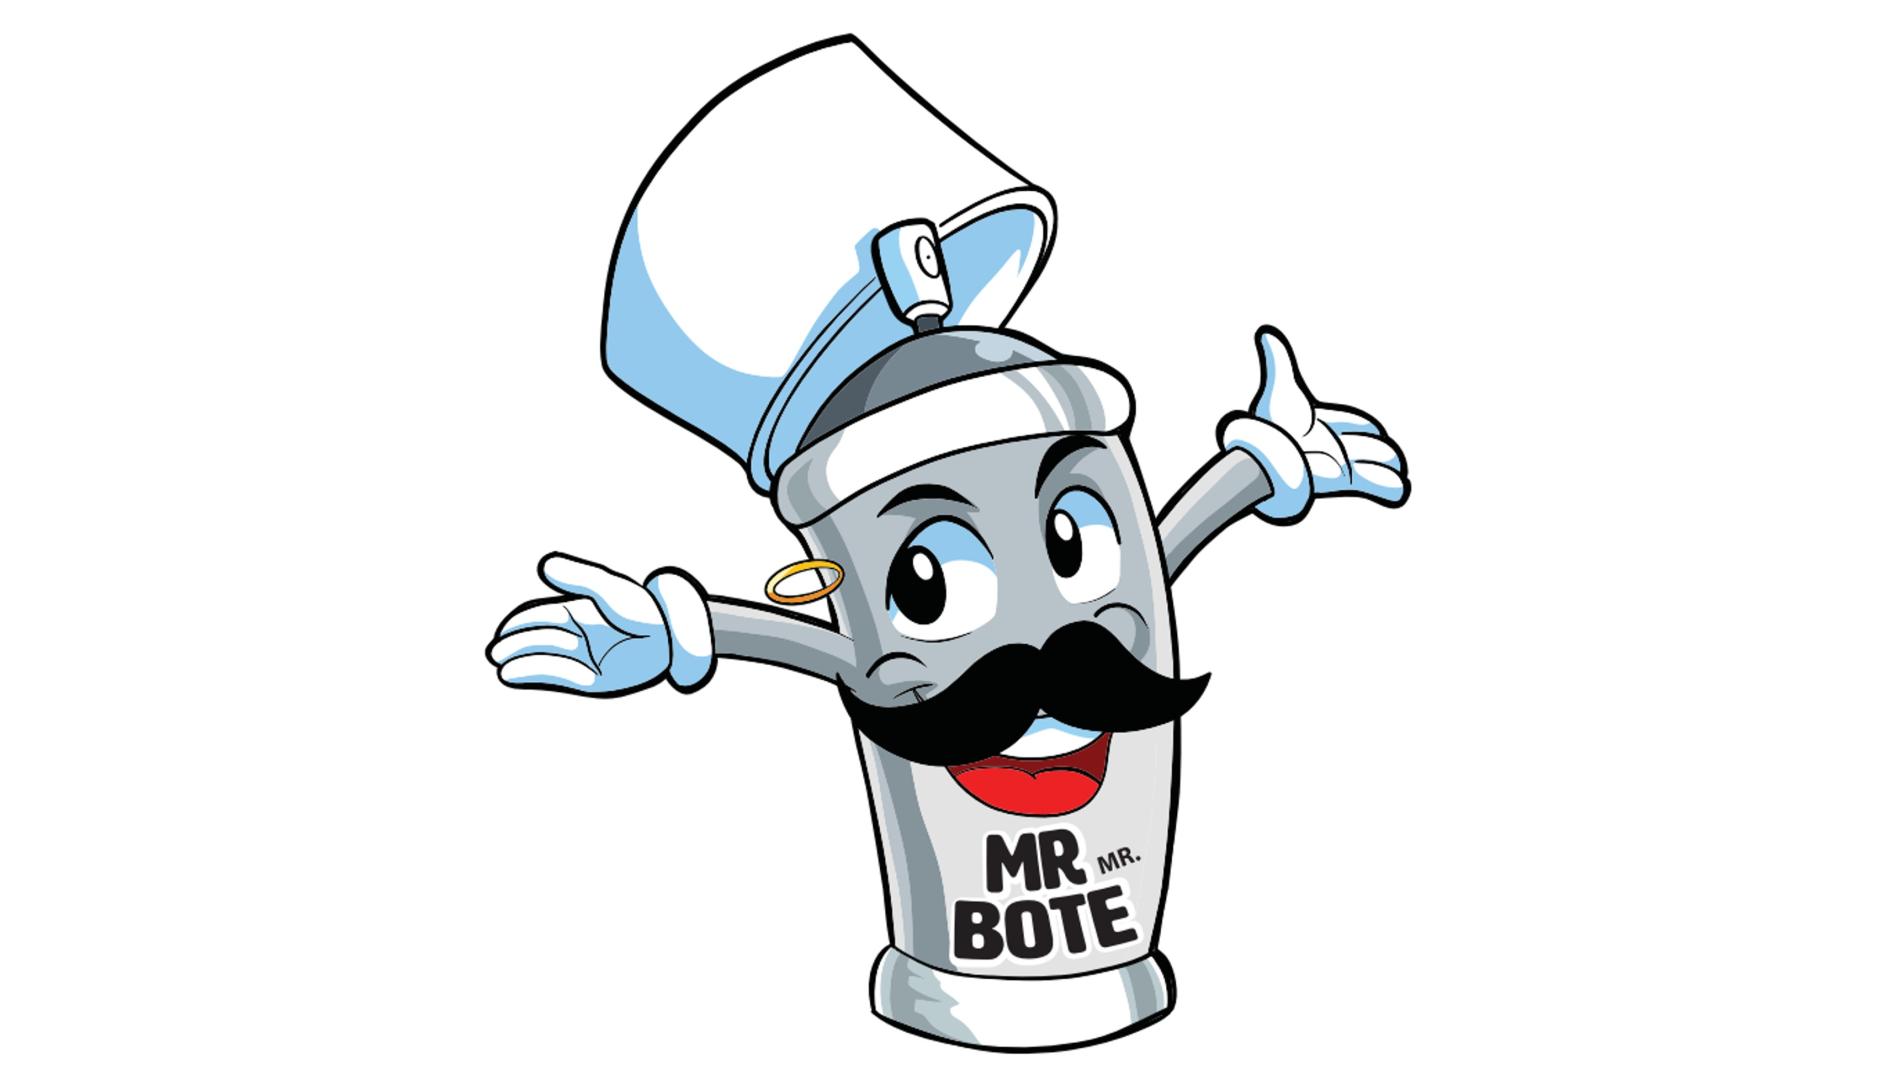 mr-bote-MR. BOTE.jpg